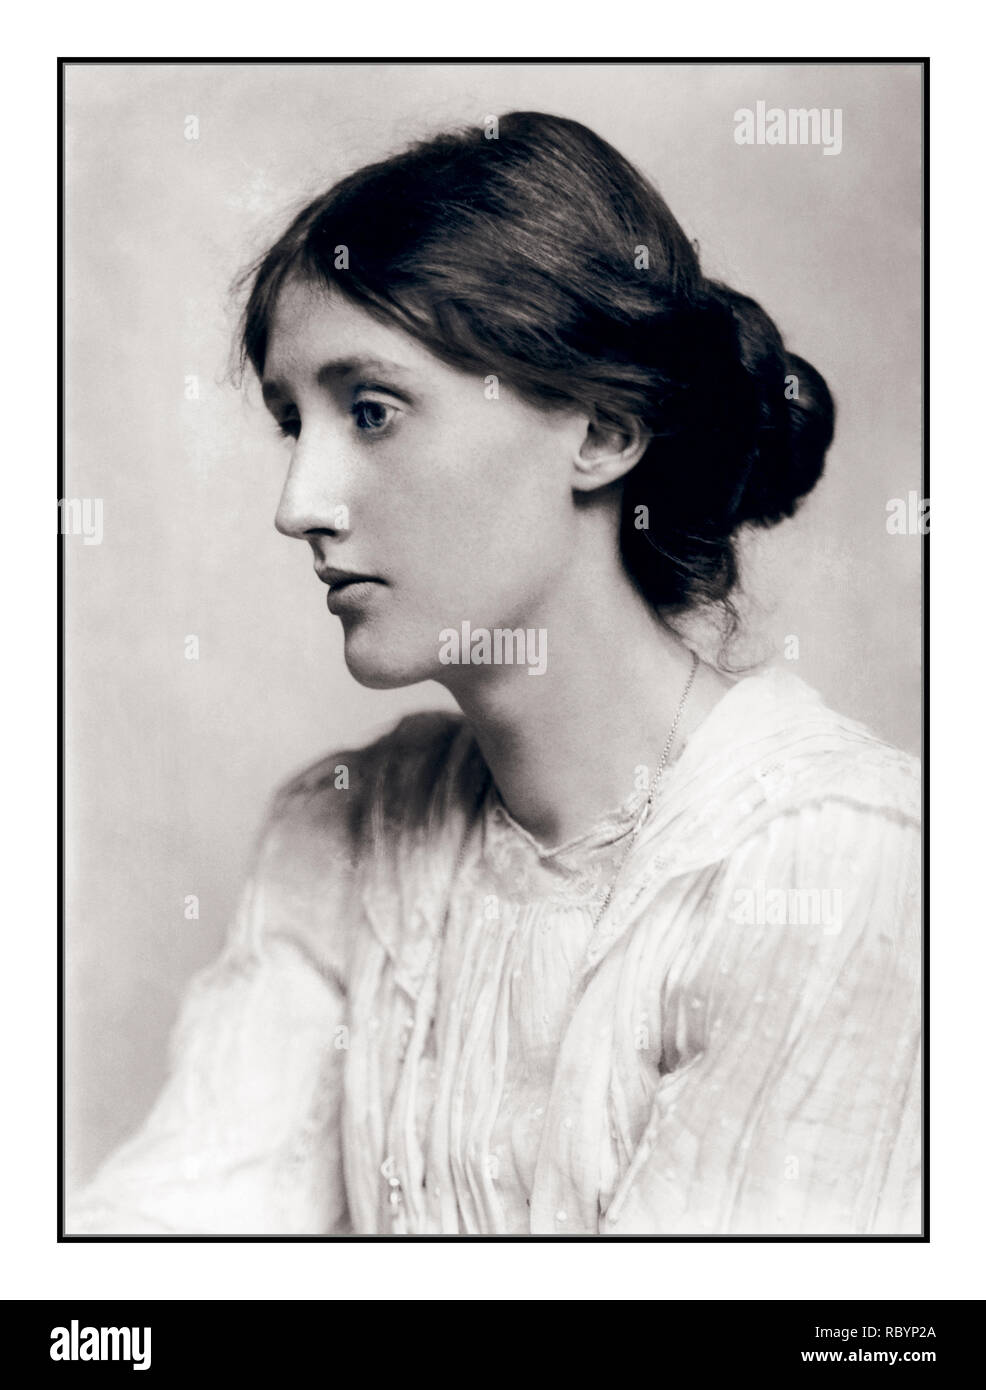 VIRGINIA WOOLF Archive B&W 1900's Tempperate Wistful Portrait of Virginia Woolf (25 gennaio 1882 – 28 marzo 1941), un autore britannico e femminista, con il suo chignon. Foto Stock